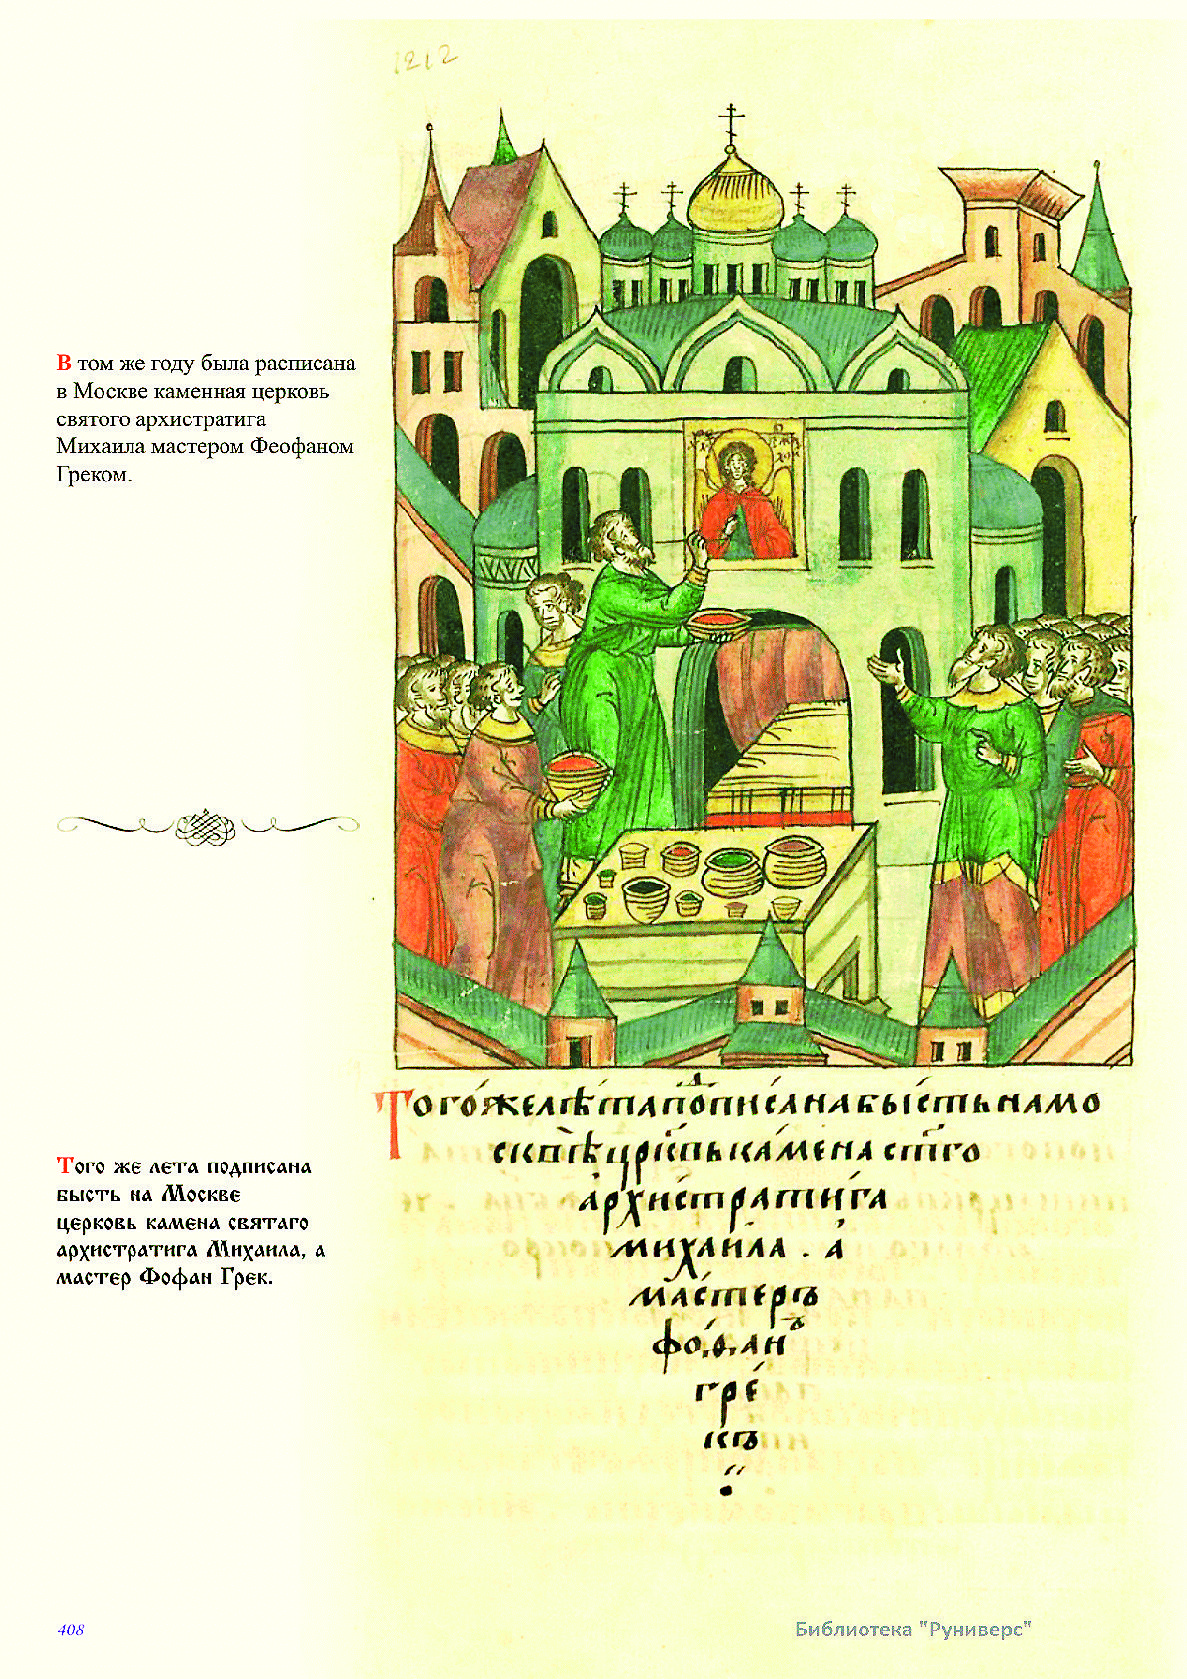 Феофан Грек расписывает церковь Архистратига Михаила0412 1.jpg